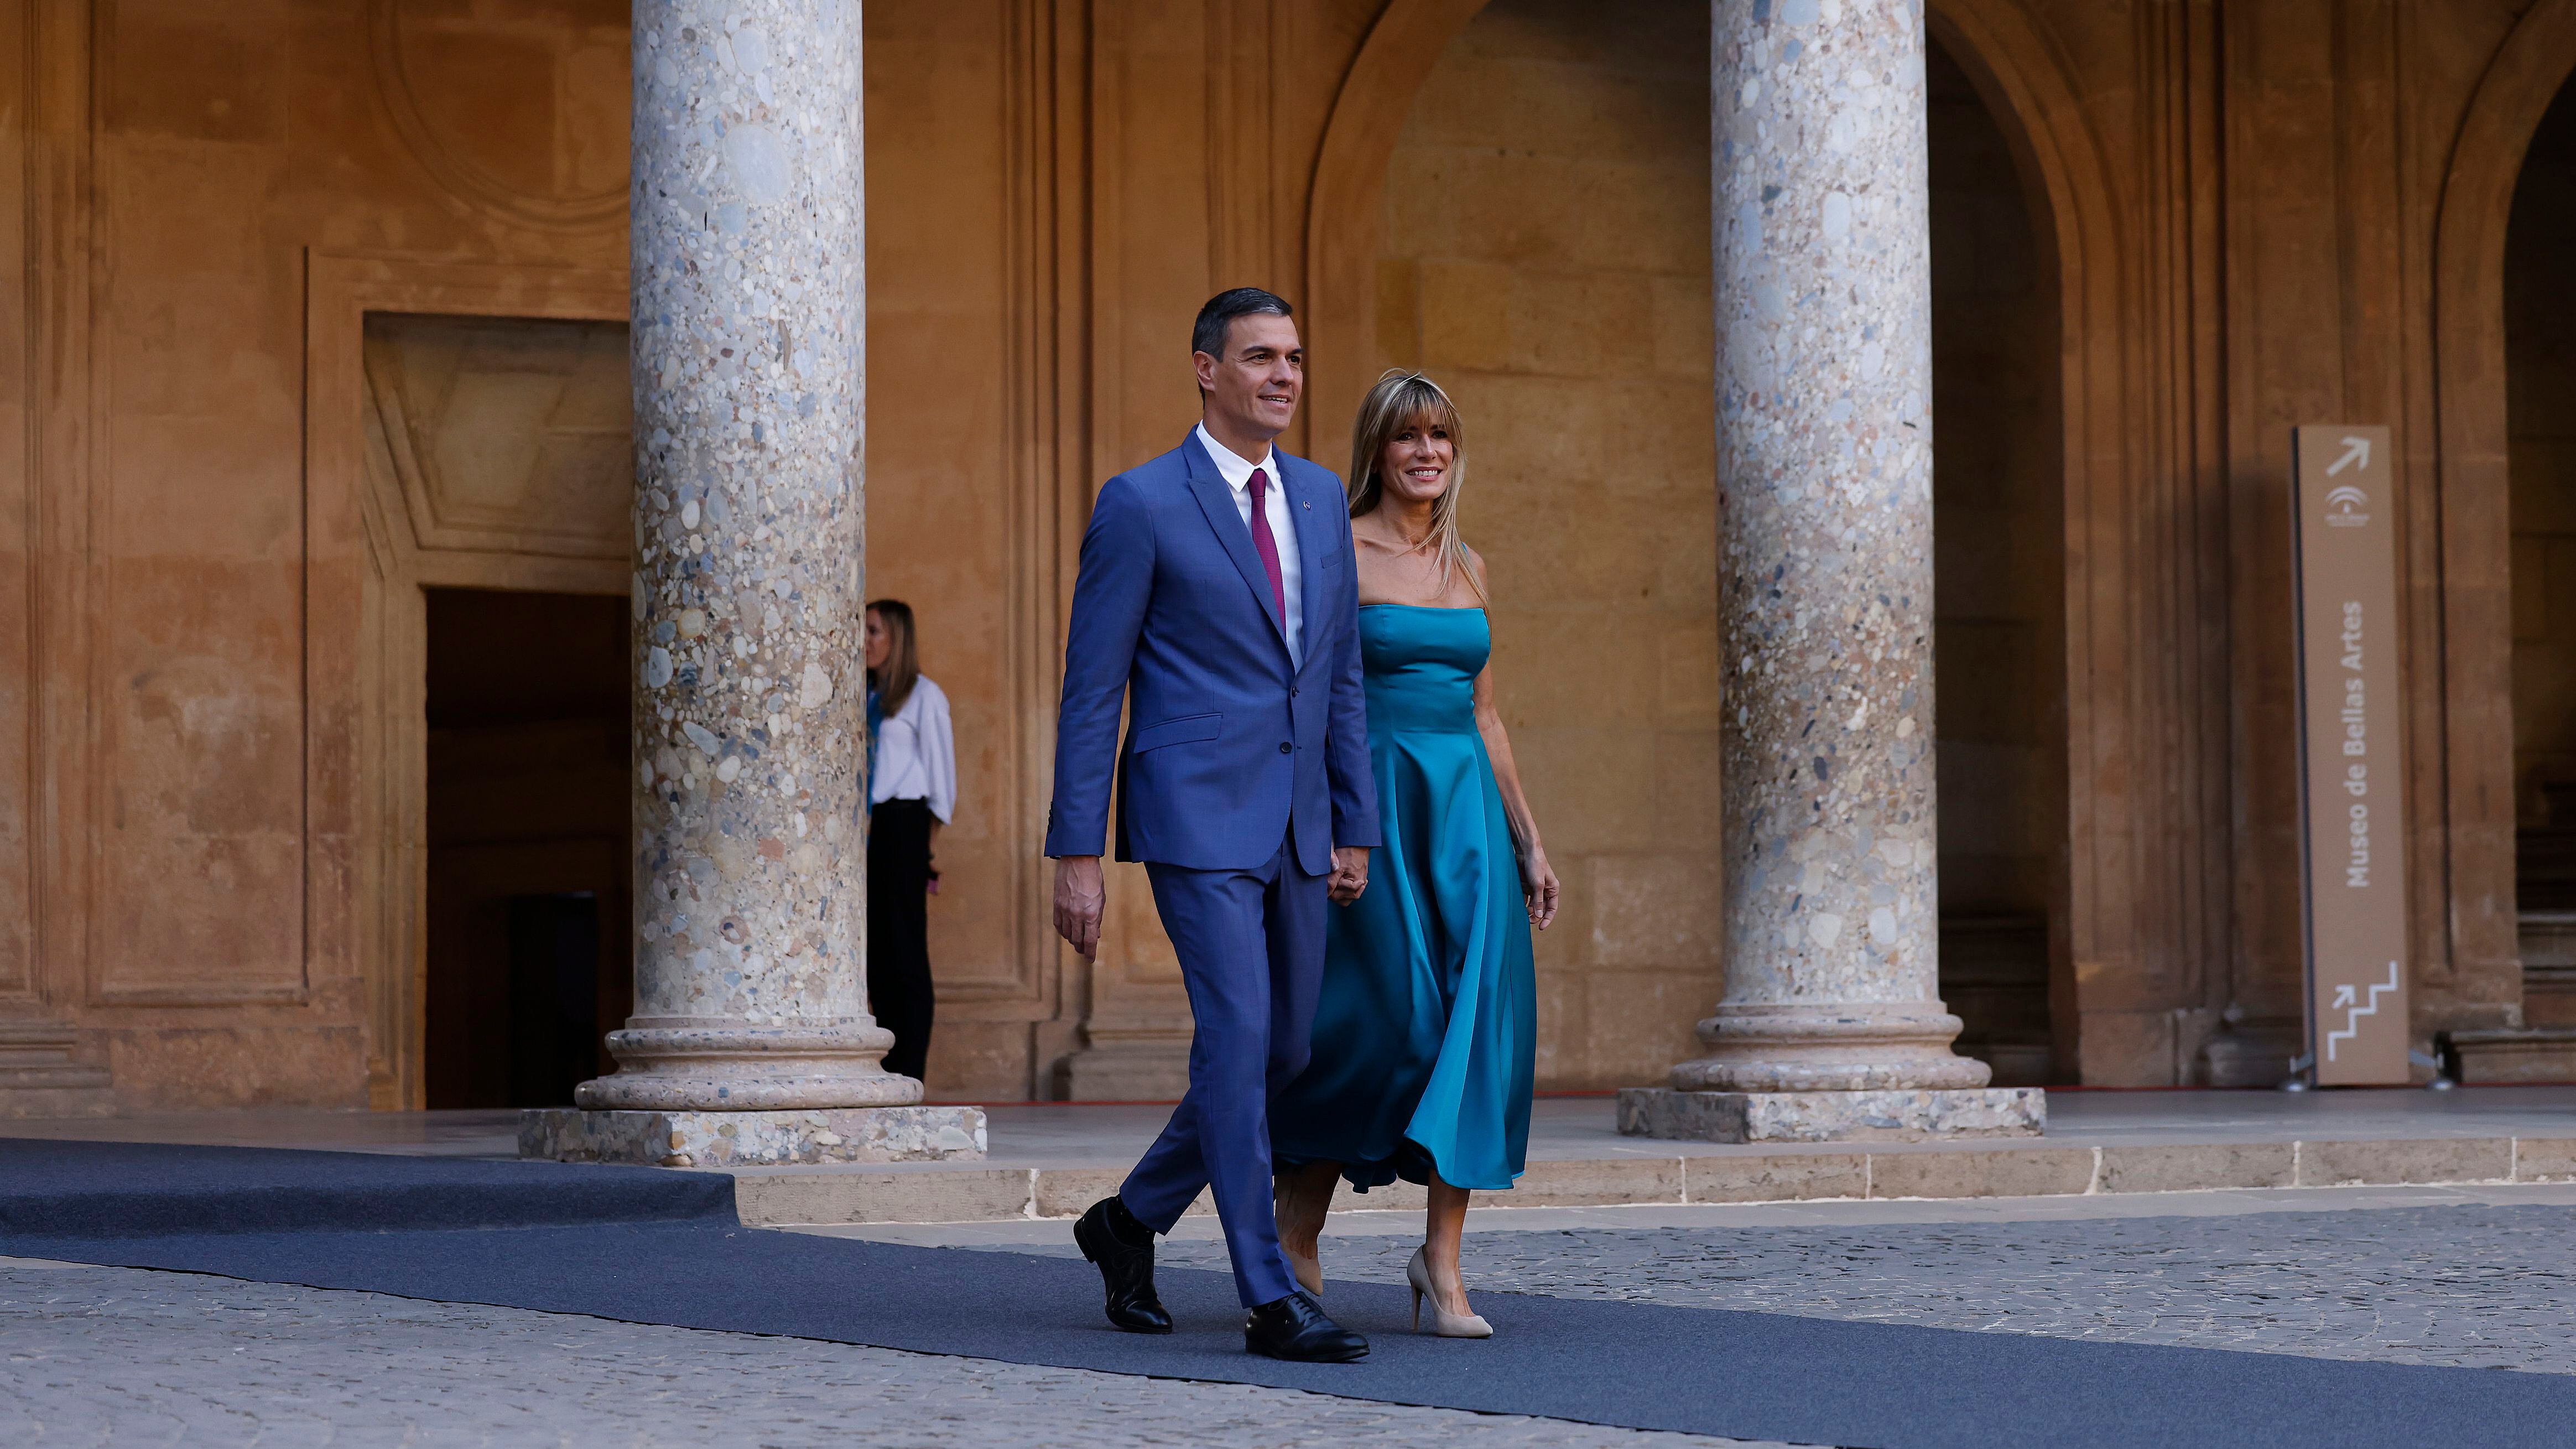 El presidente del Gobierno en funciones, Pedro Sánchez, y su esposa, Begoña Gómez, entran en el Palacio de Carlos V de la Alhambra.